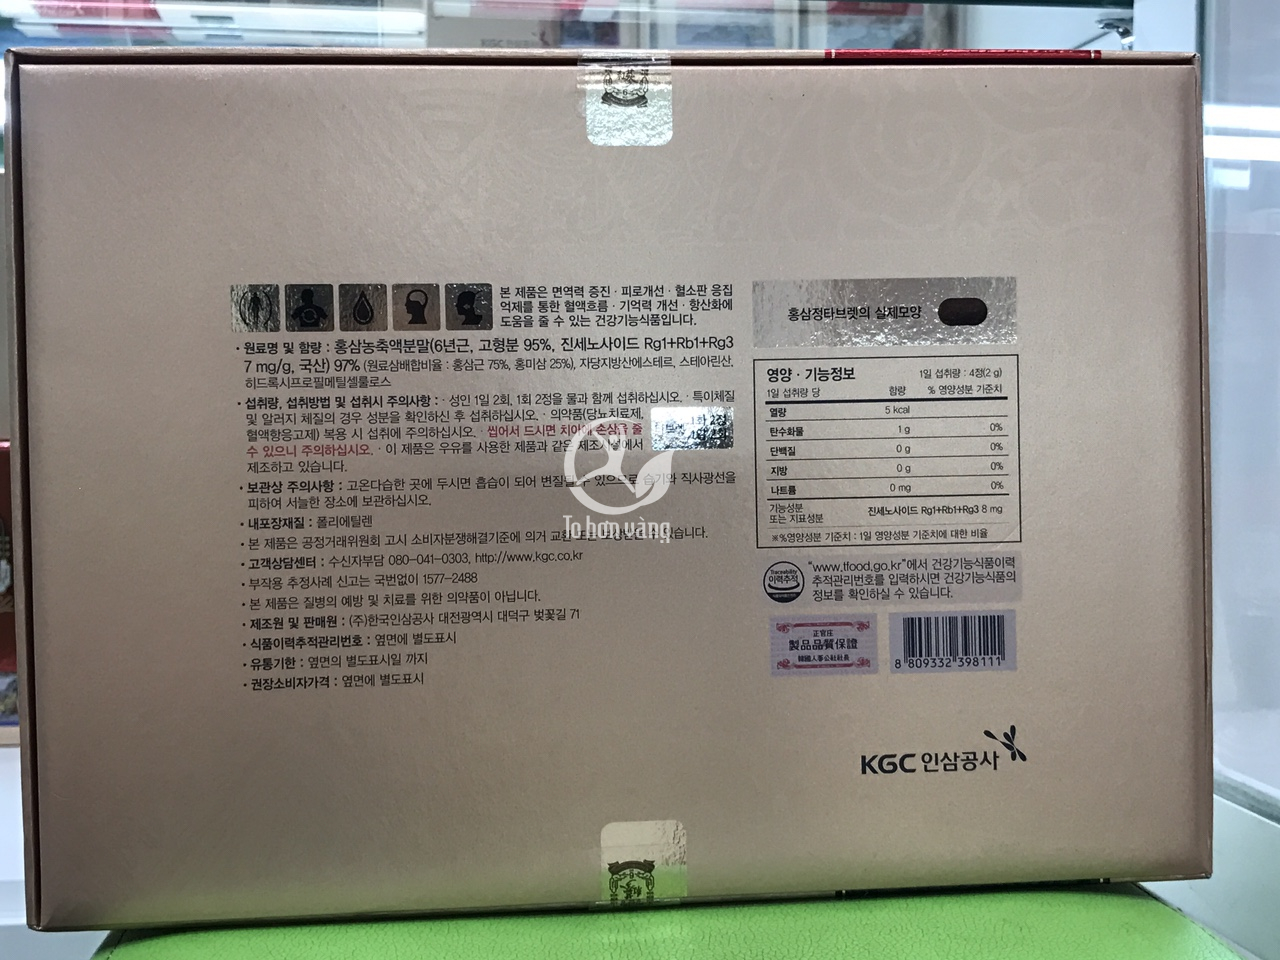 Mặt sau của hộp sản phẩm viên hồng sâm KGC